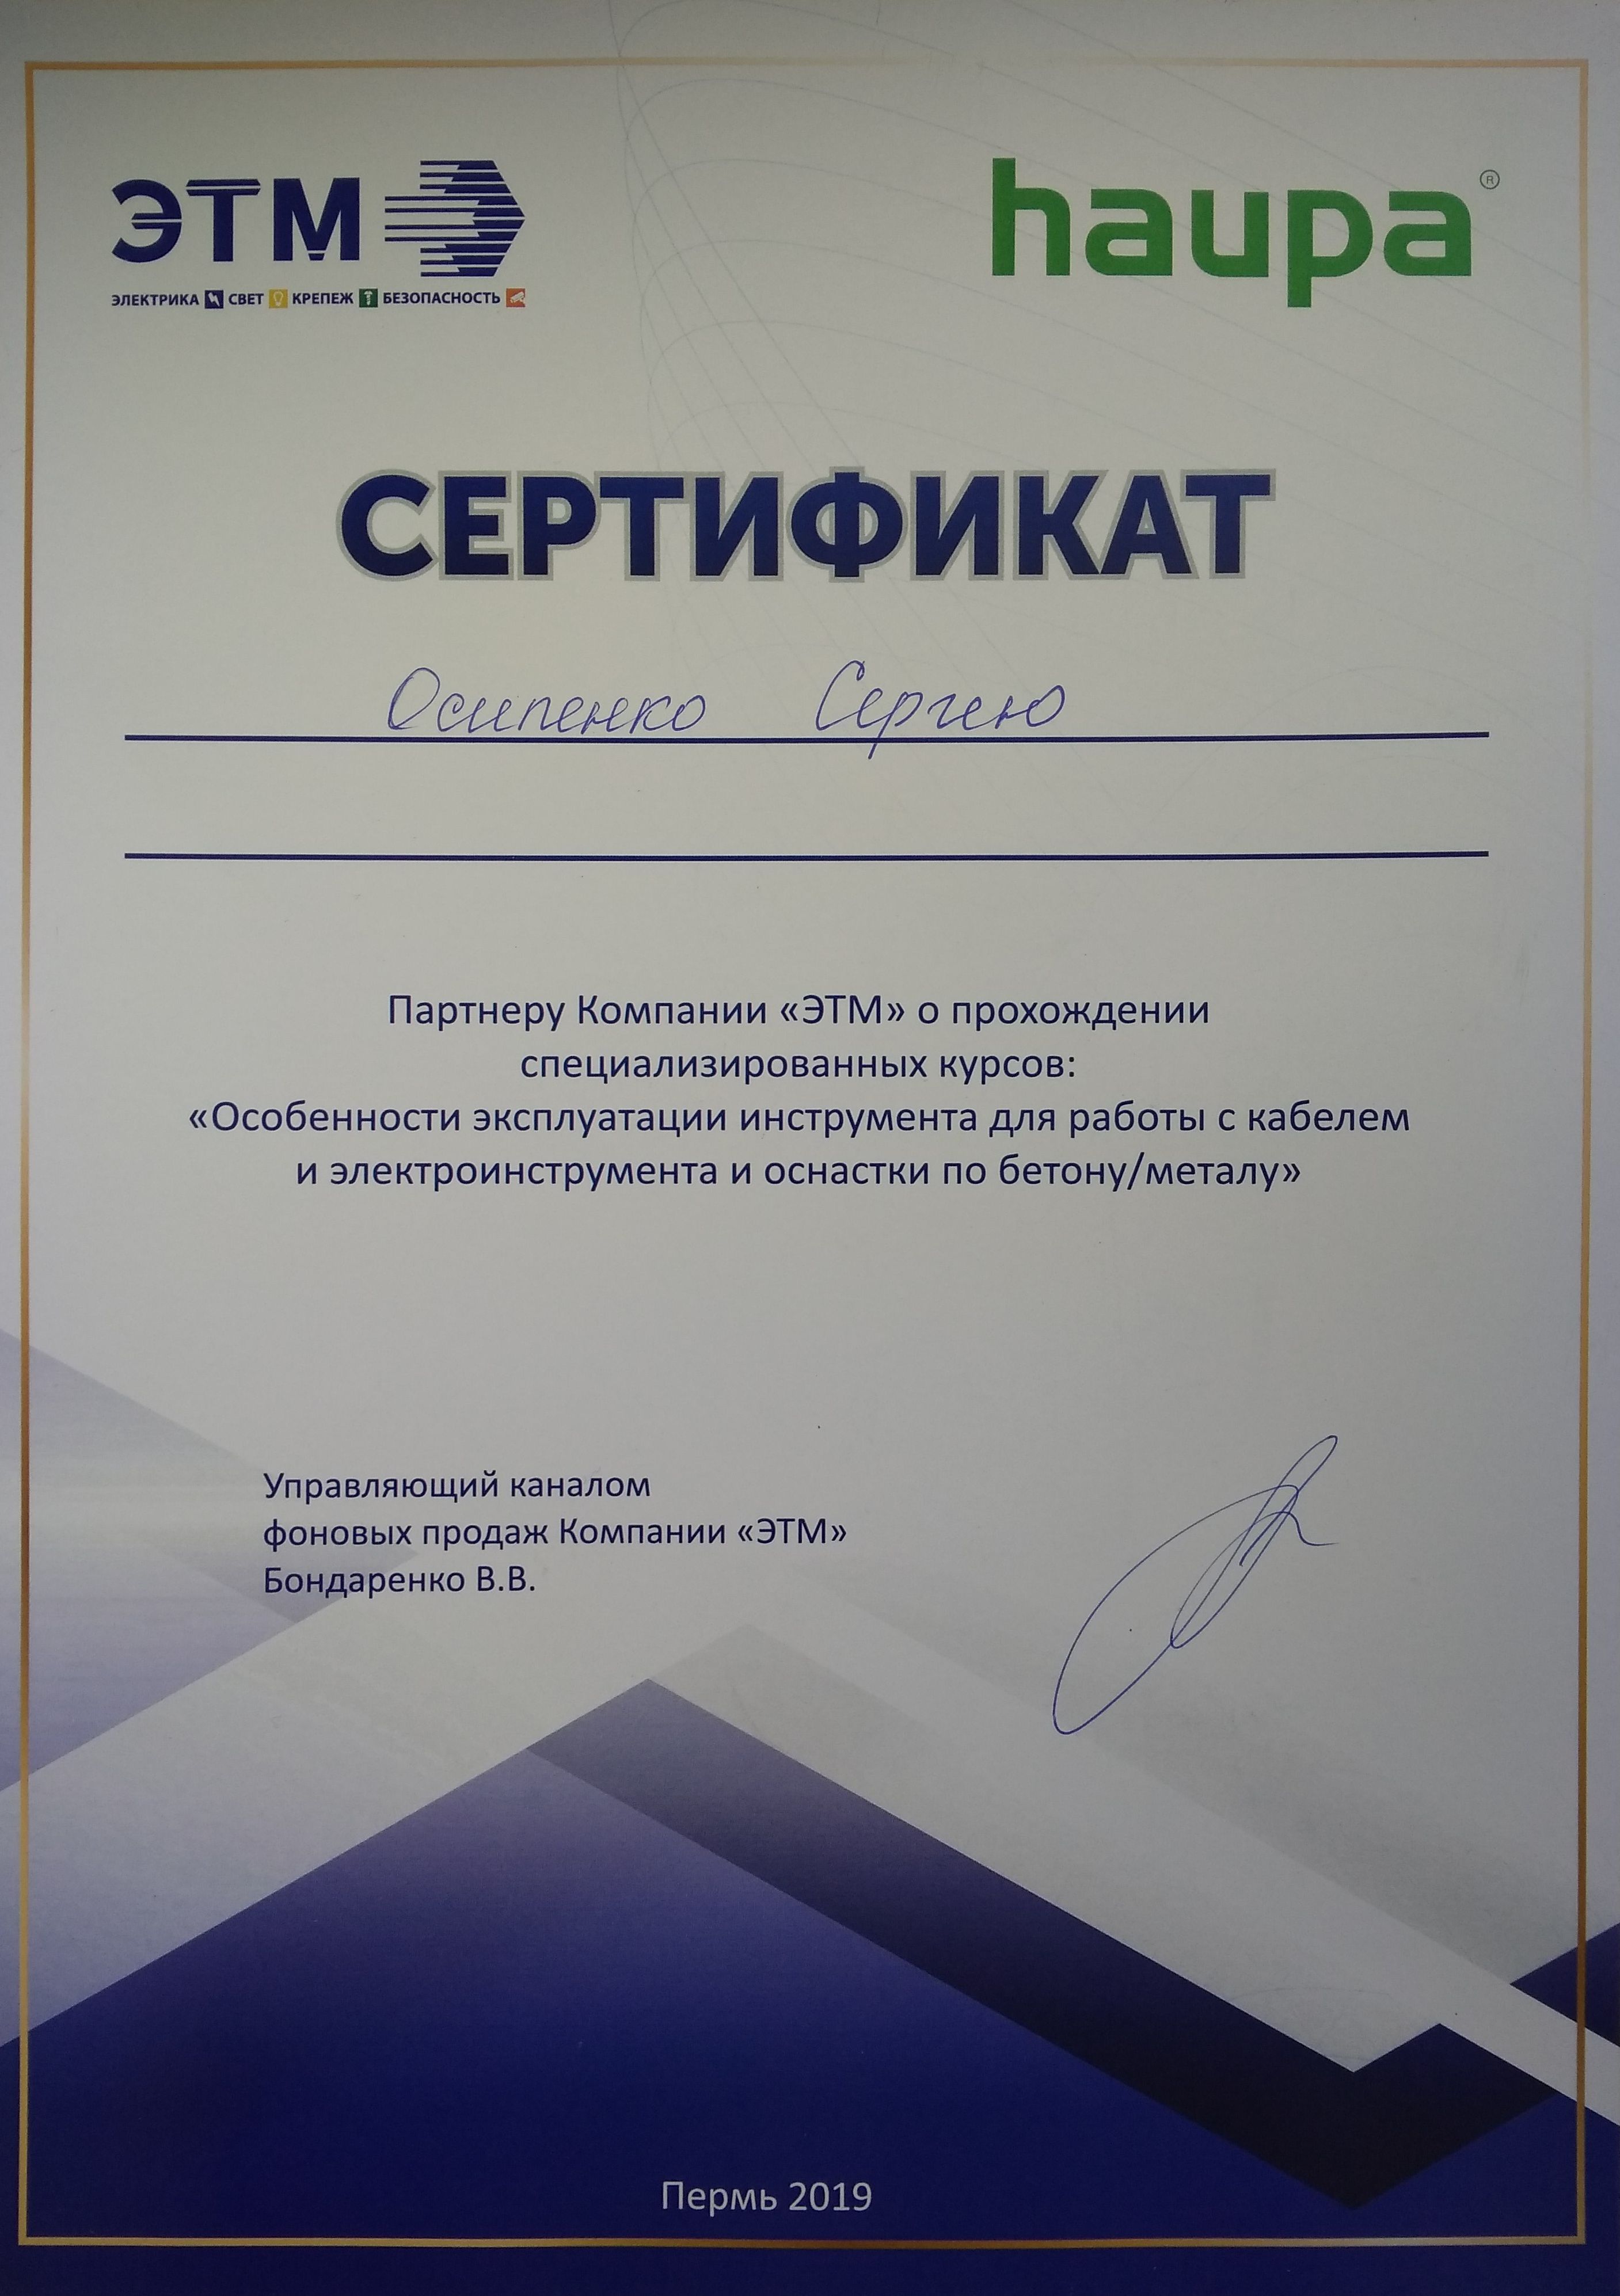 Сертификат курсов для монтажников компании  ЭТМ совместно с компанией HAUPA.